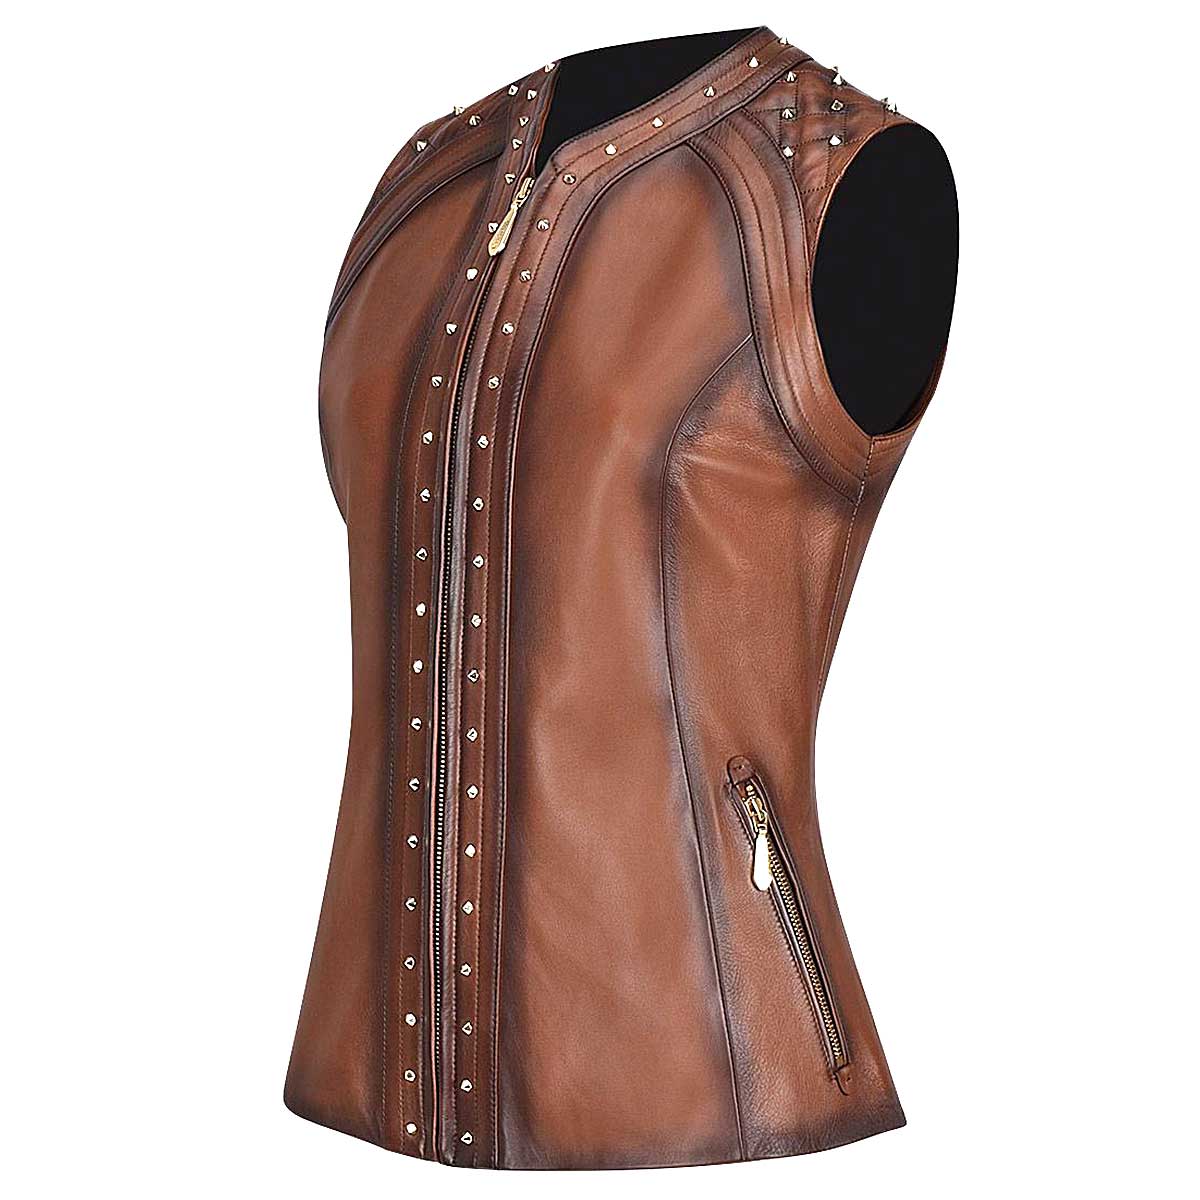 Shoulder pads leather vest, Brown vest for Womens - M289COC - Cuadra Shop